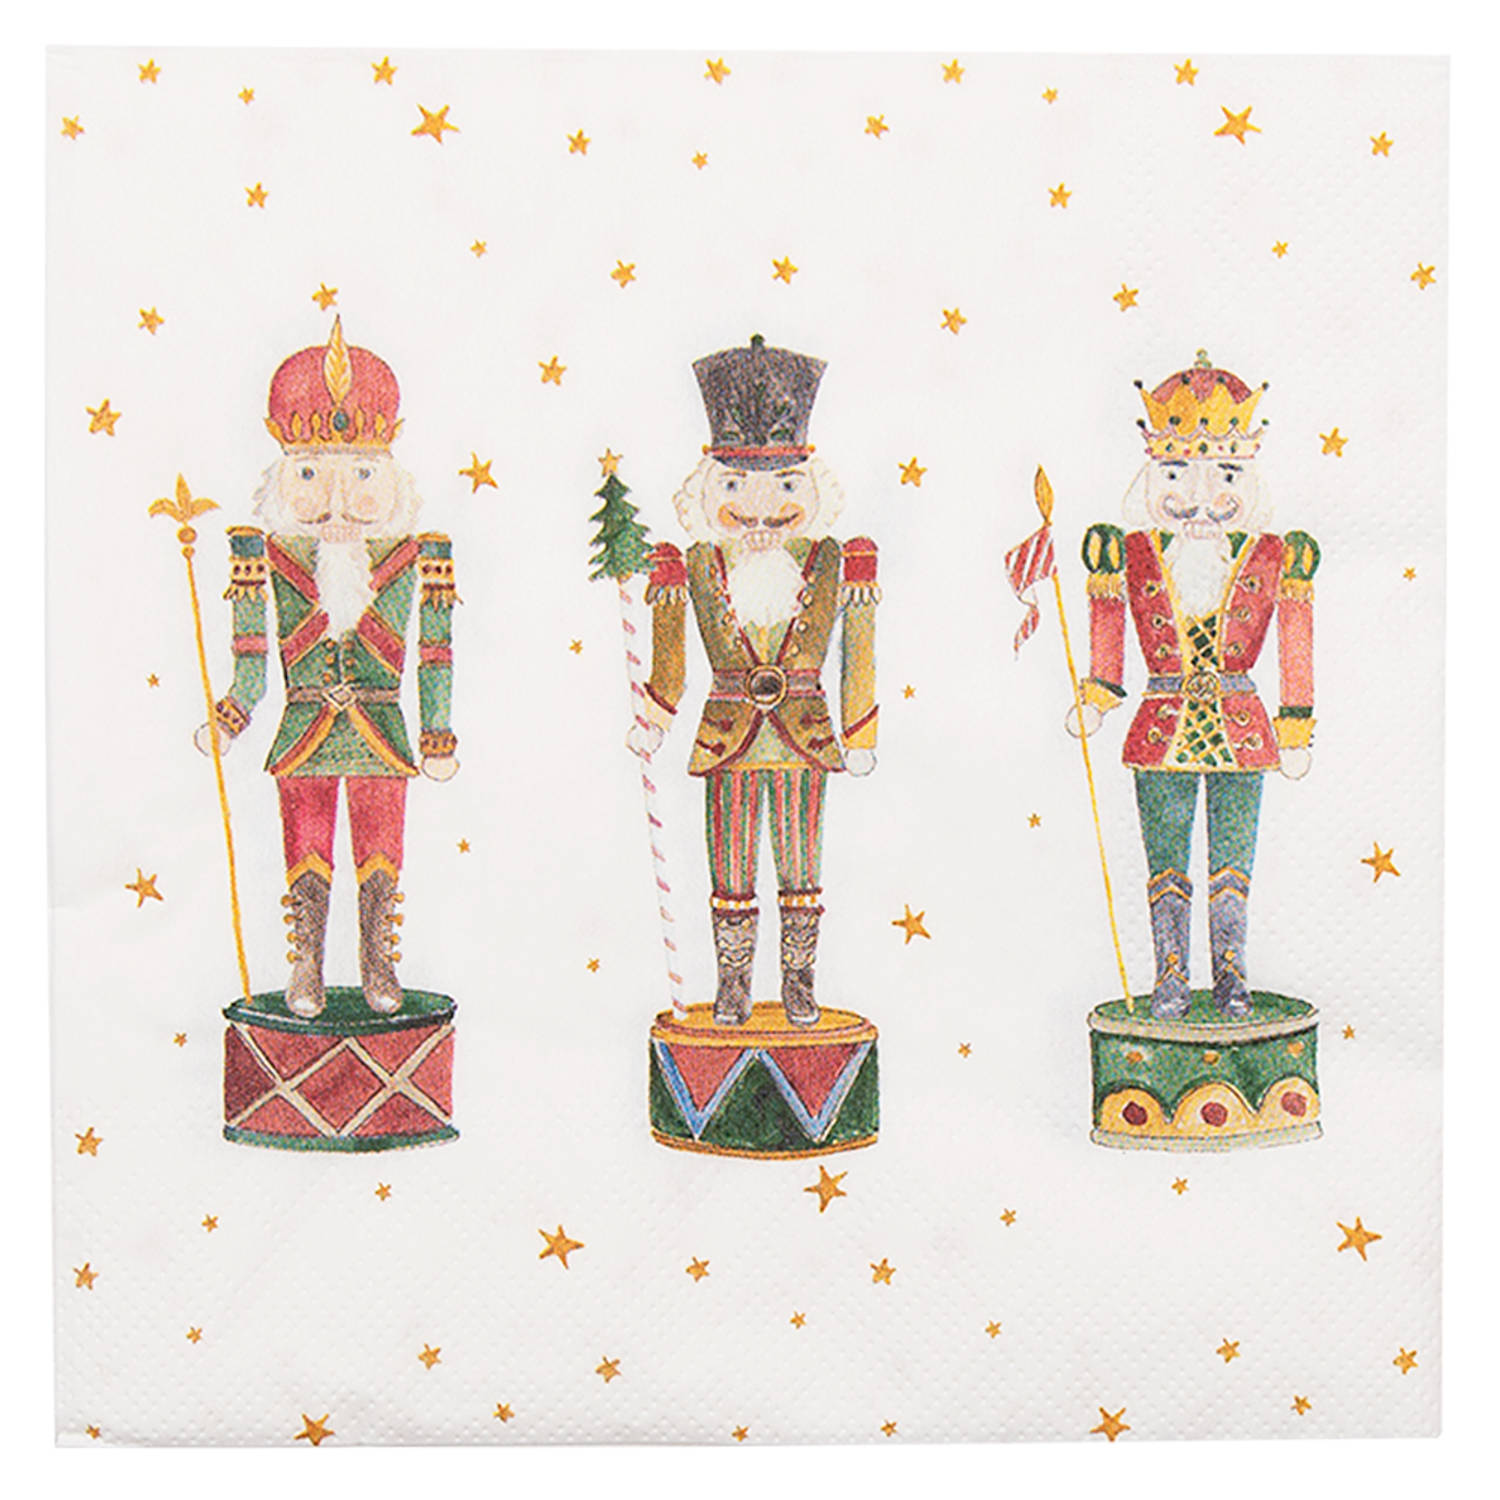 HAES DECO - Set van 4 Wegwerpservetten - formaat 33x33 cm (20 stuks in verpakking) - kleuren Wit / Rood / Groen / Bruin - van Papier - Collectie: Happy Little Christmas - Totaal 80